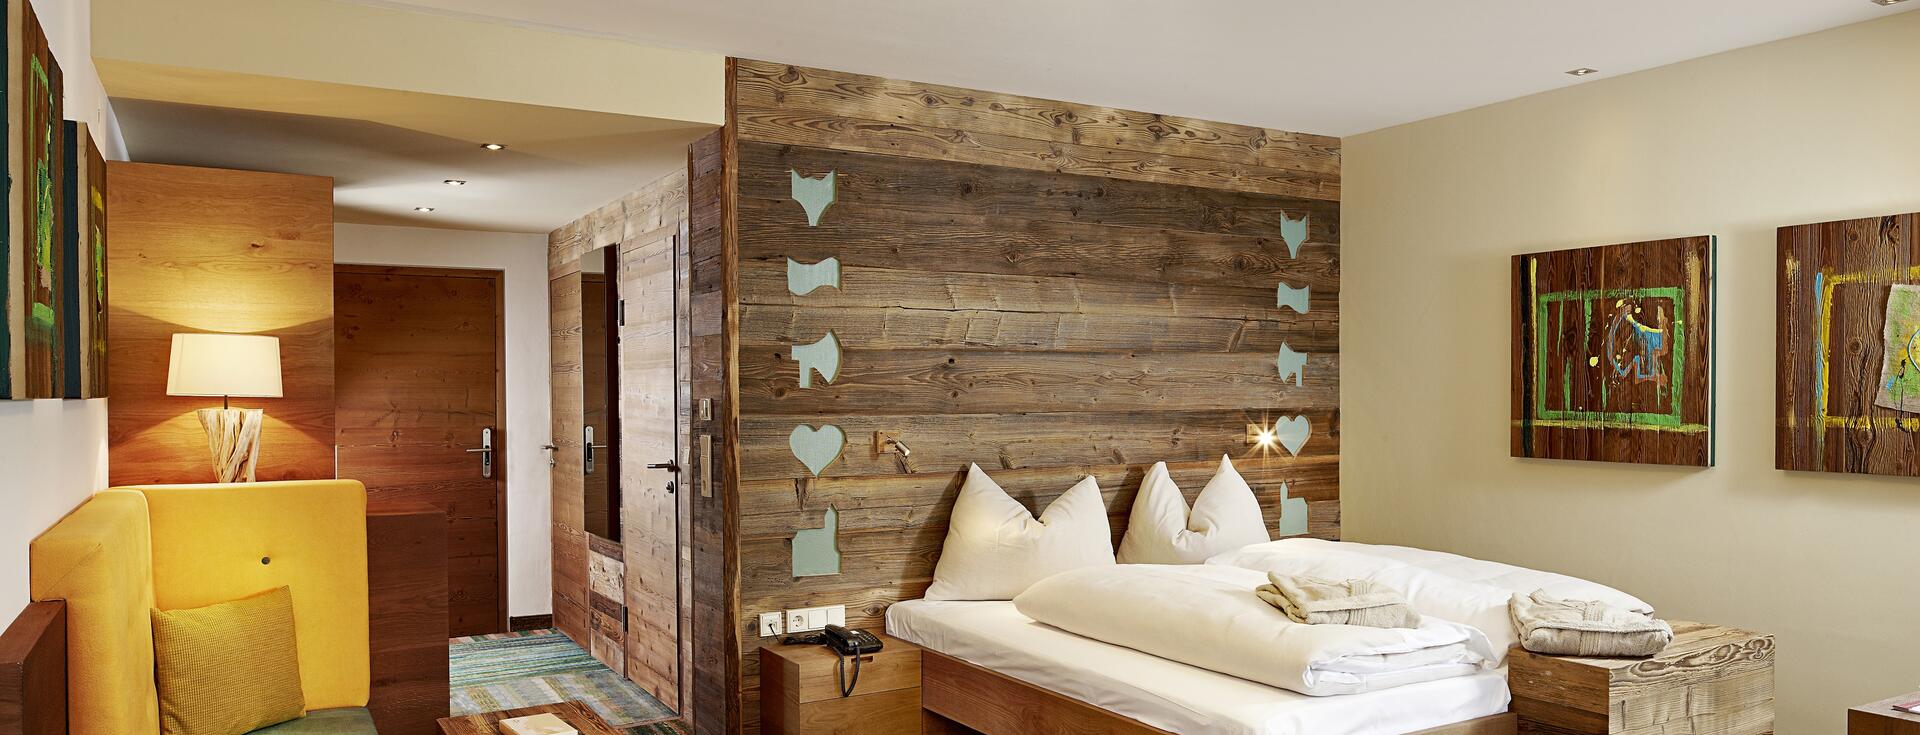 wooden hotel room